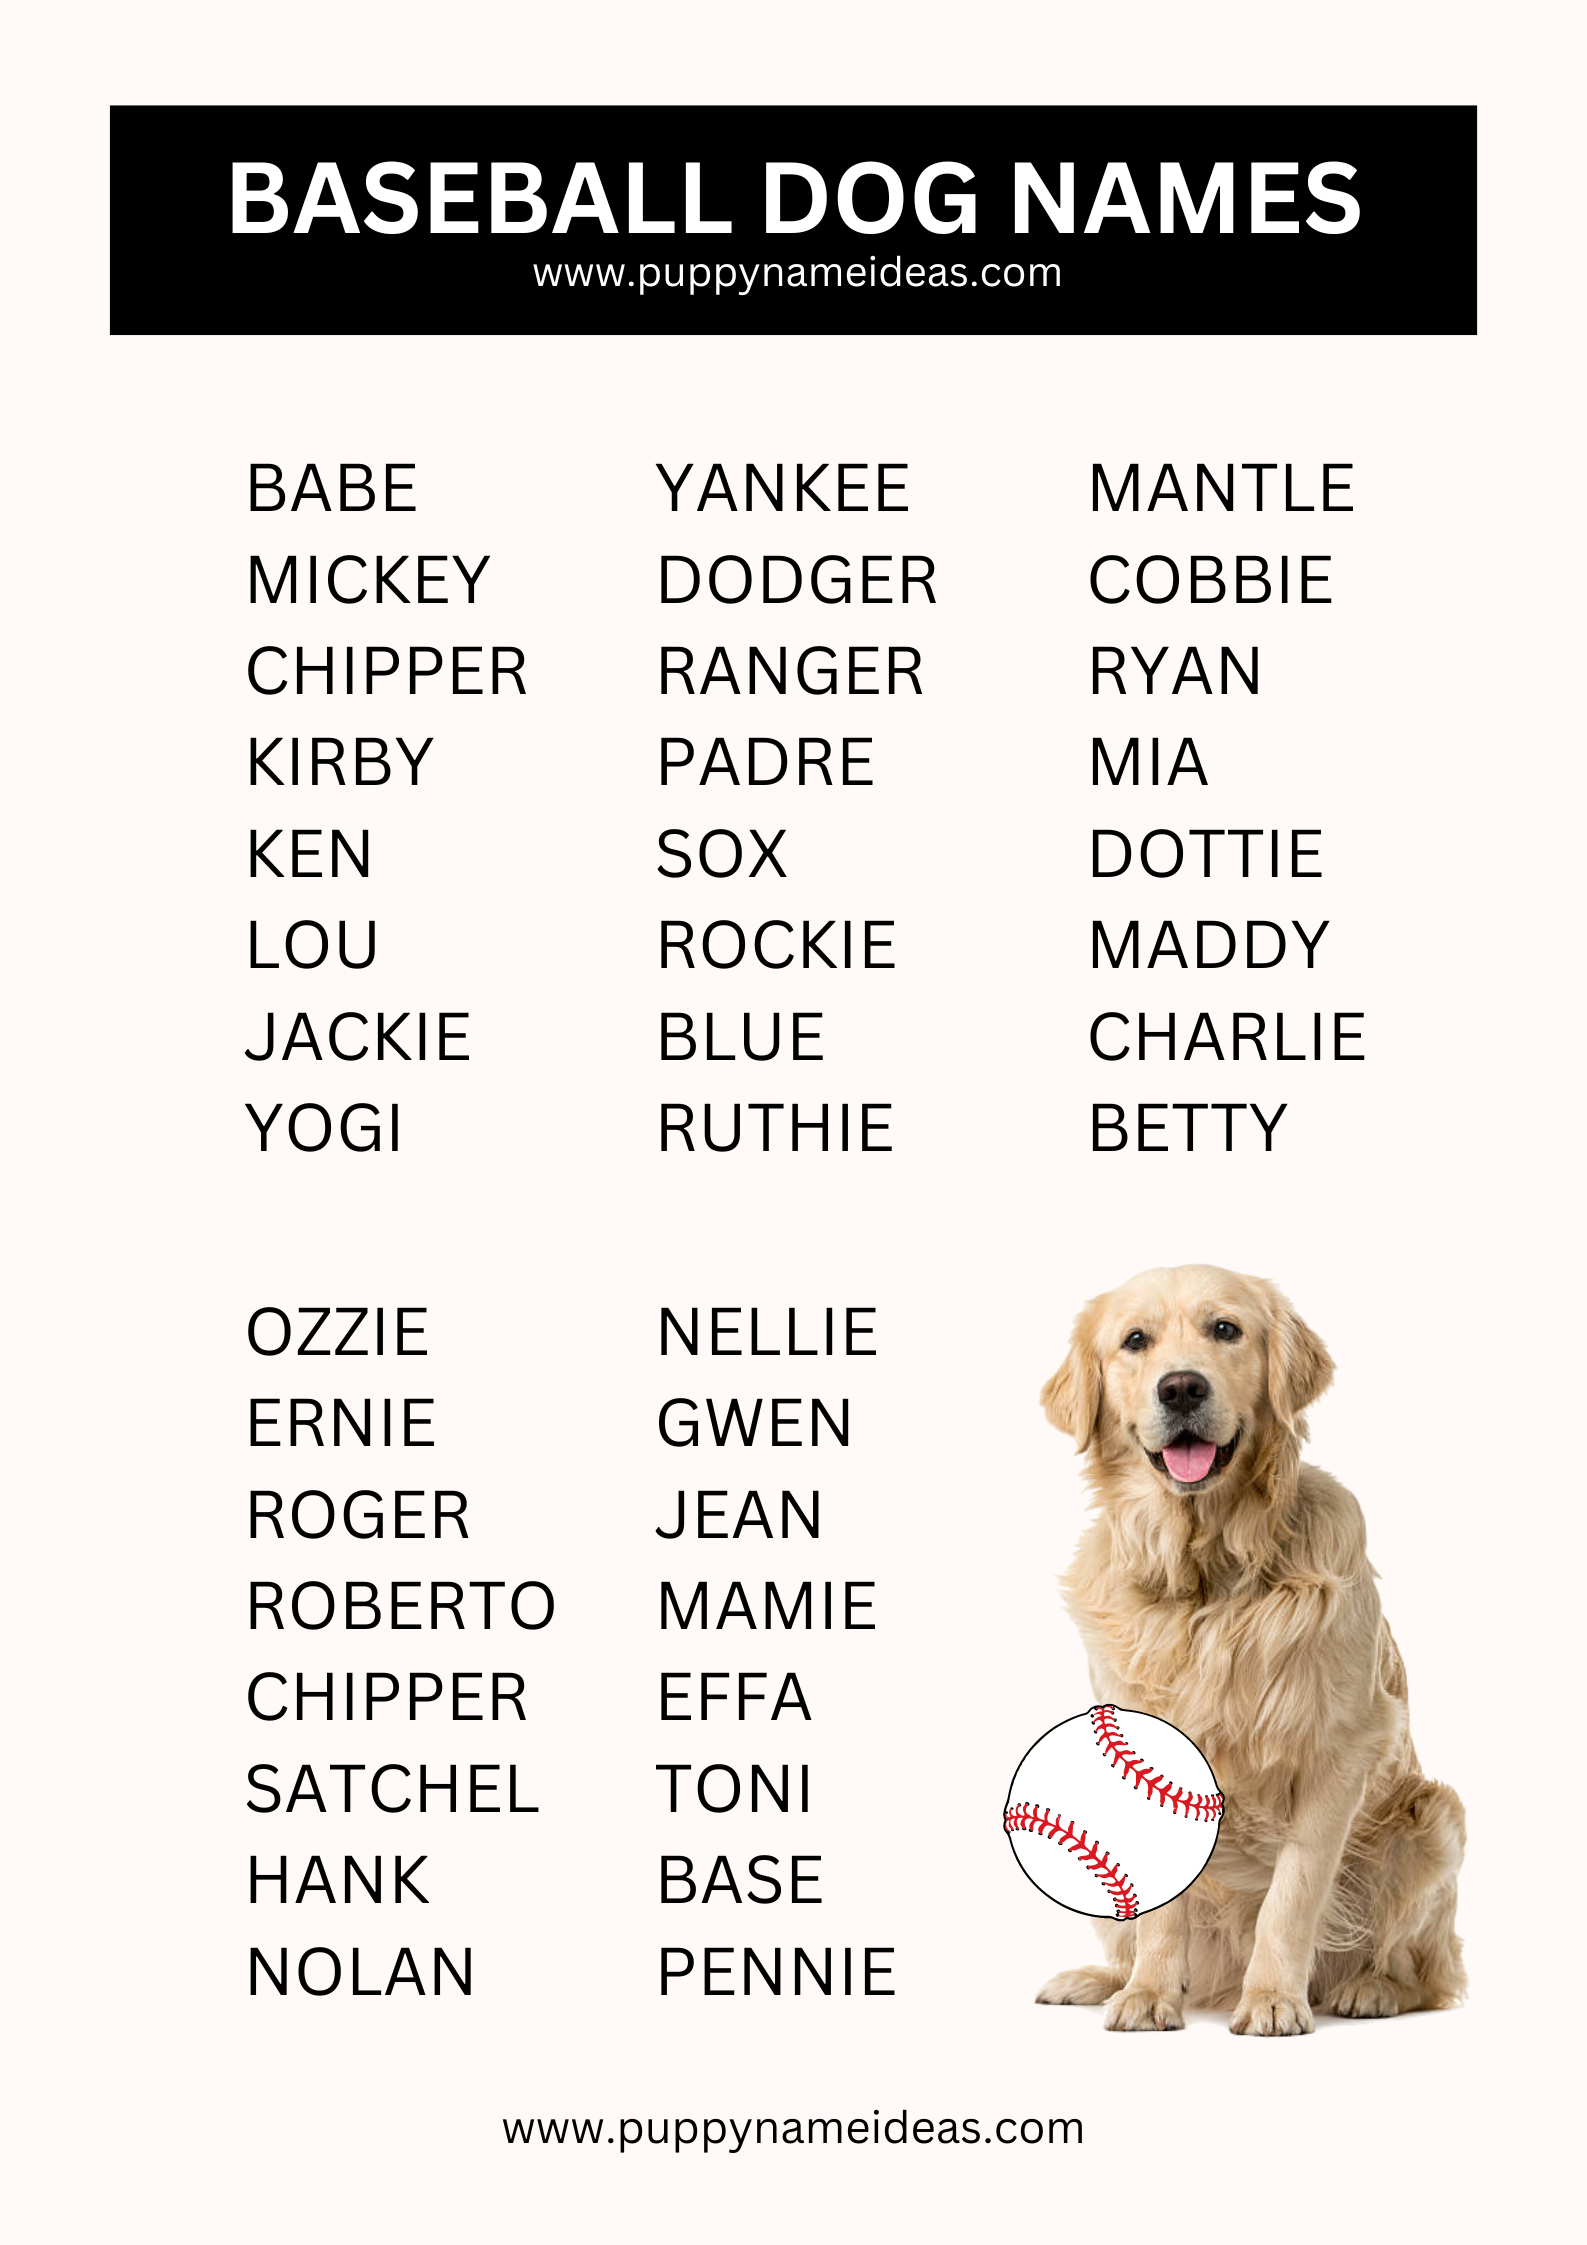 List Of Baseball Dog Names